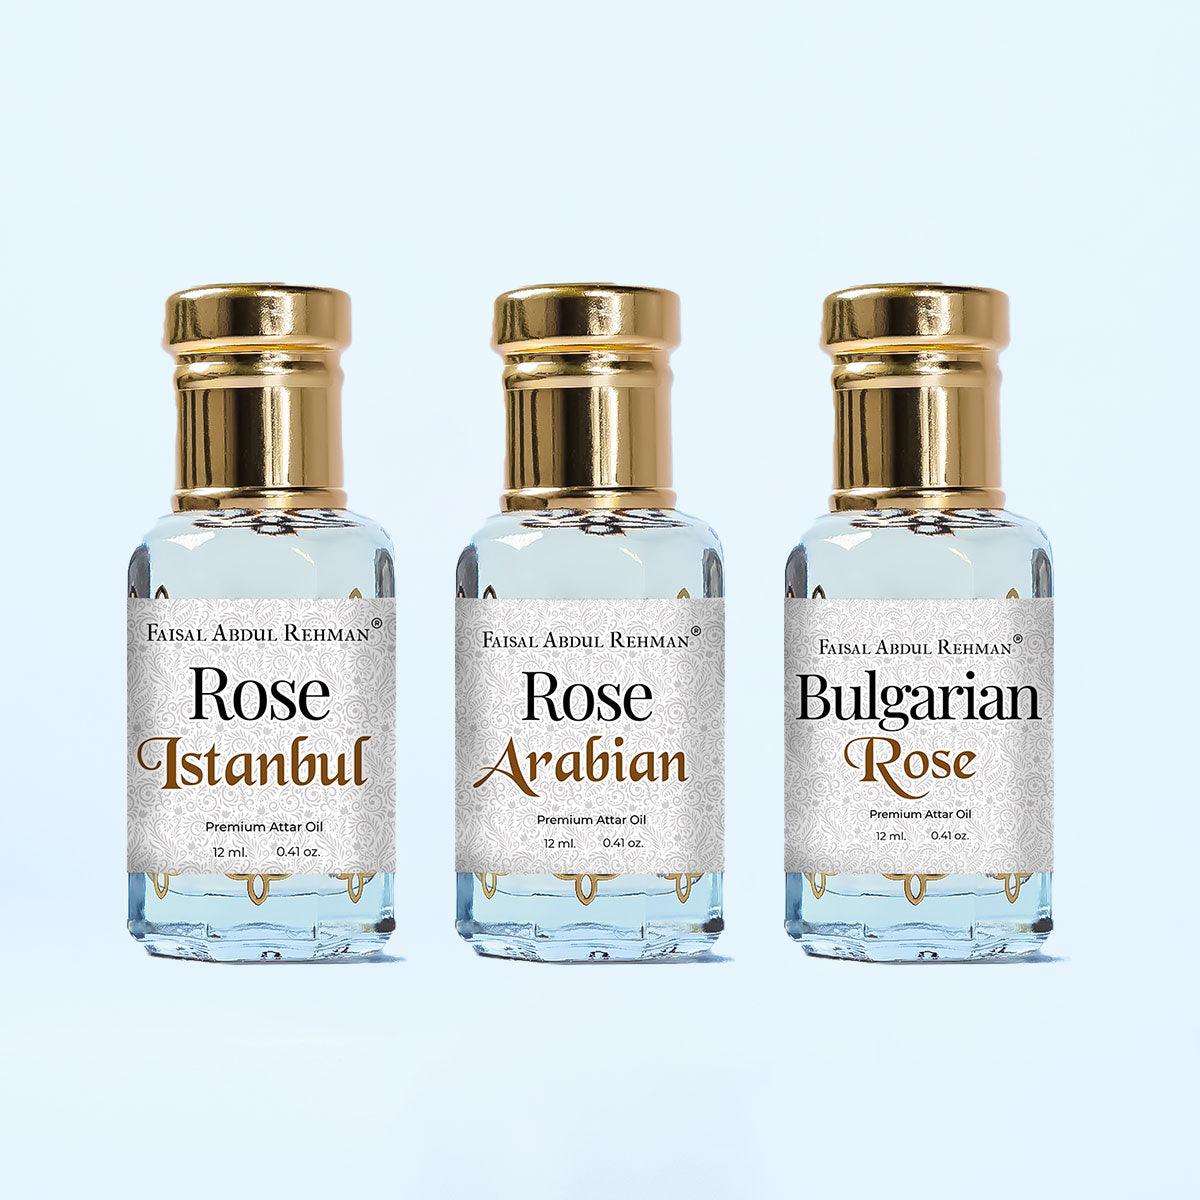 Rose Istanbul, Rose Arabian, Bulgarian Rose12ml Each, Pack Of 3-Faisal Abdul Rehman Attar